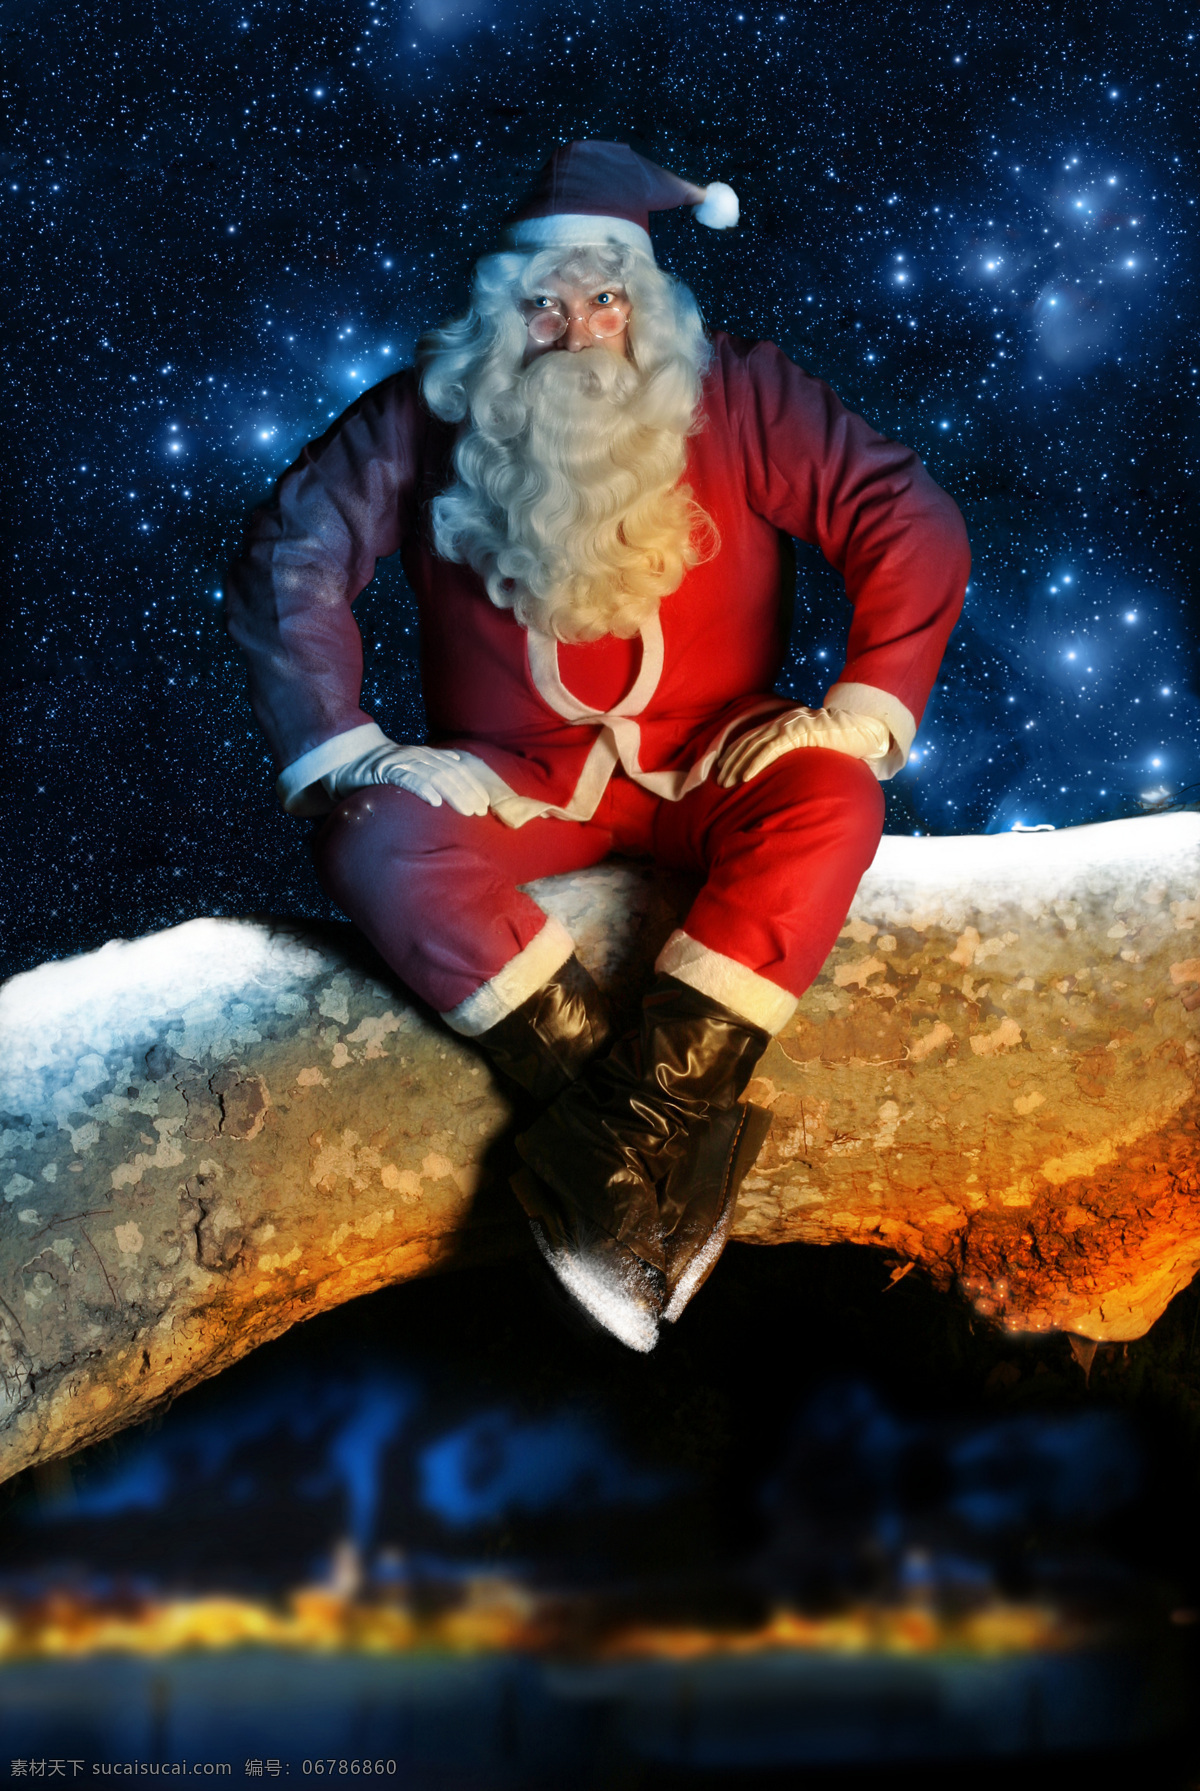 梦幻 星空 圣诞老人 圣诞节 节日素材 喜庆 梦幻星空 夜晚 老人图片 人物图片